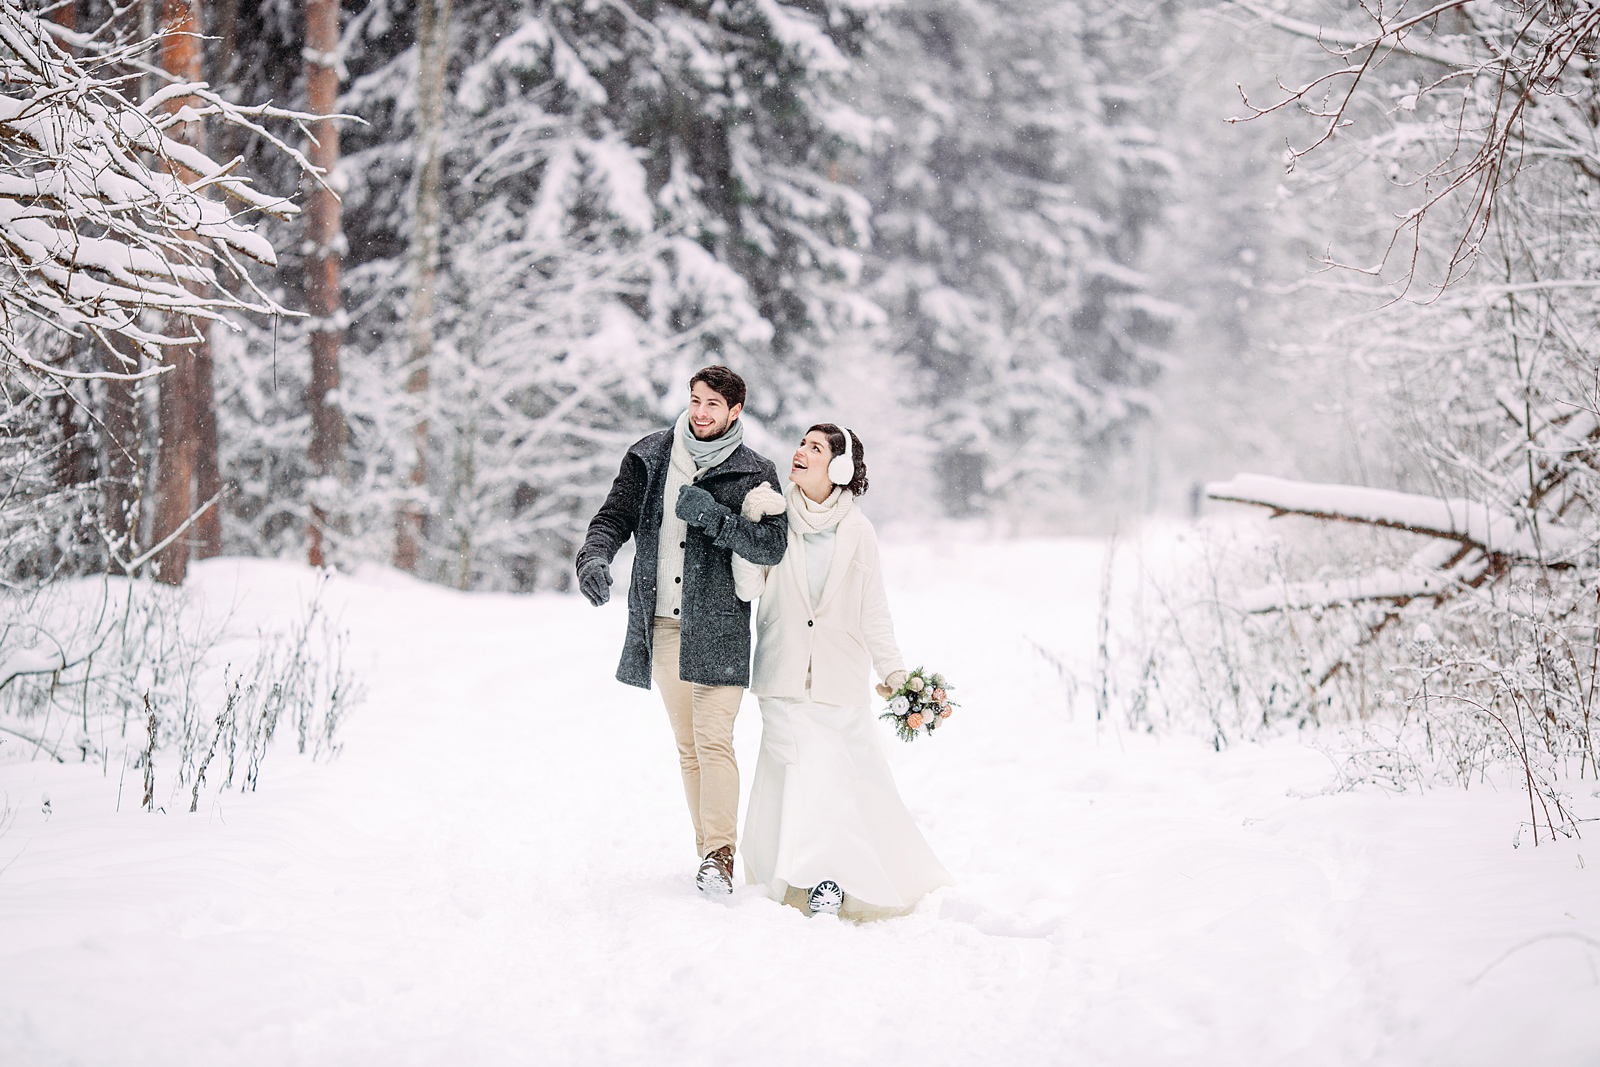 Свадебная фотосессия зимой: волшебная сказка или роскошный бал?